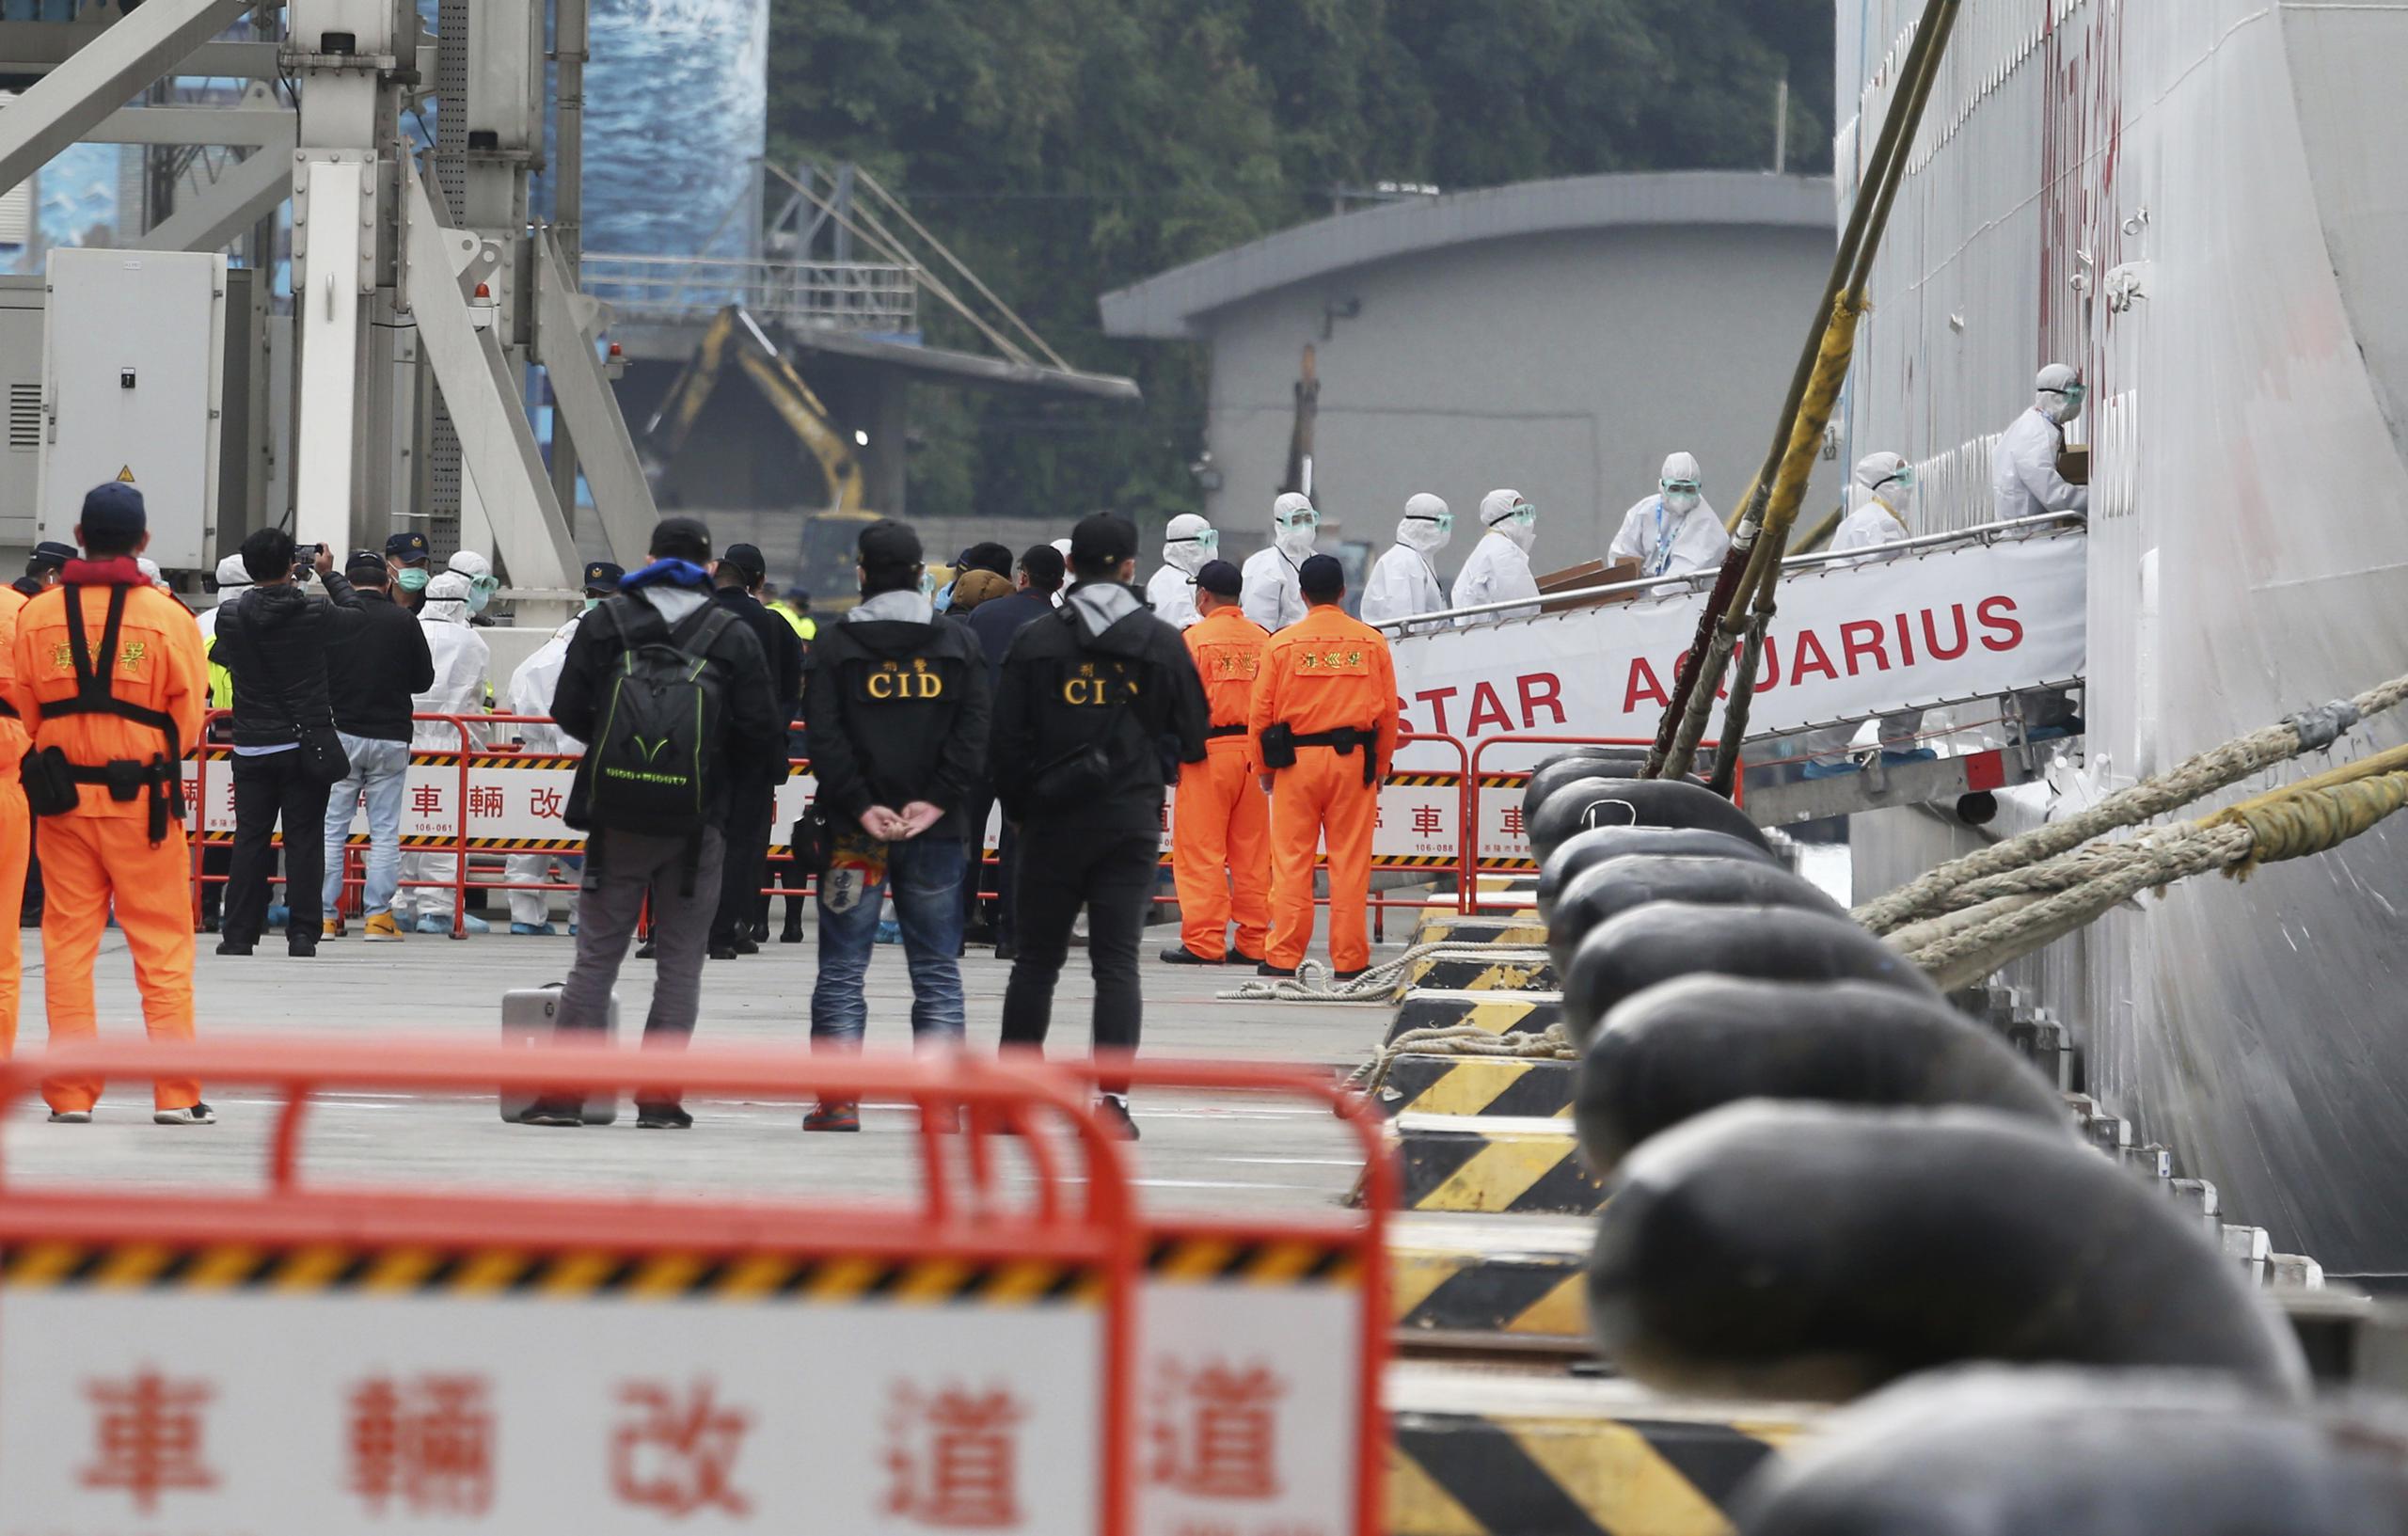 Trabajadores de prevención de epidemias se subieron al crucero SuperStar Aquarius, atracado en Nueva Taipei, Taiwán.